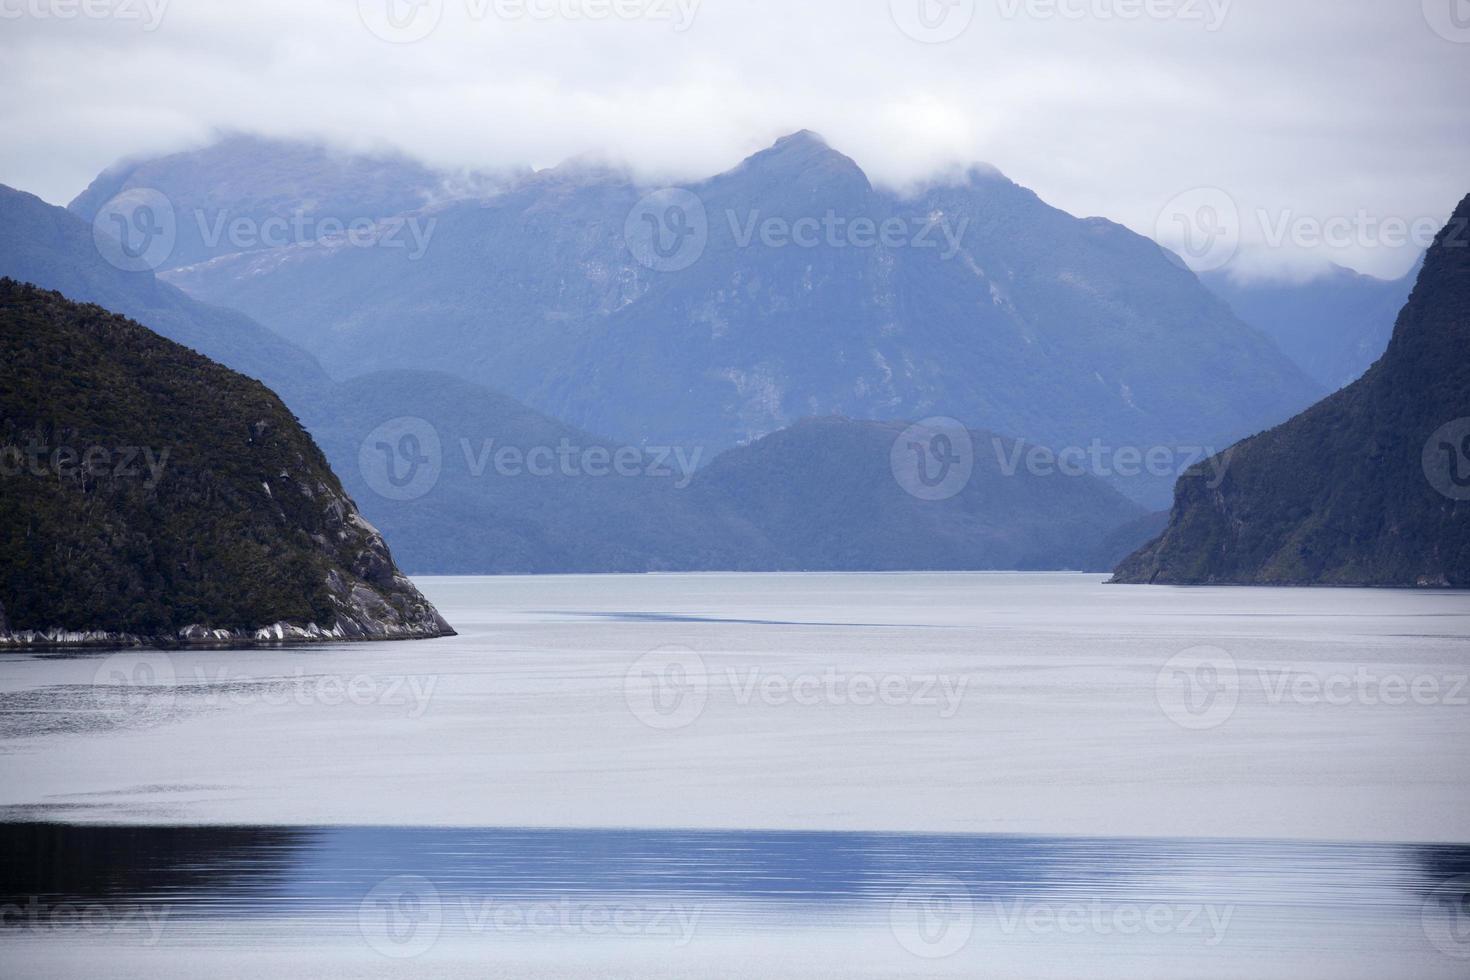 Fjordland National Park Ruhe Wasser und Berge foto